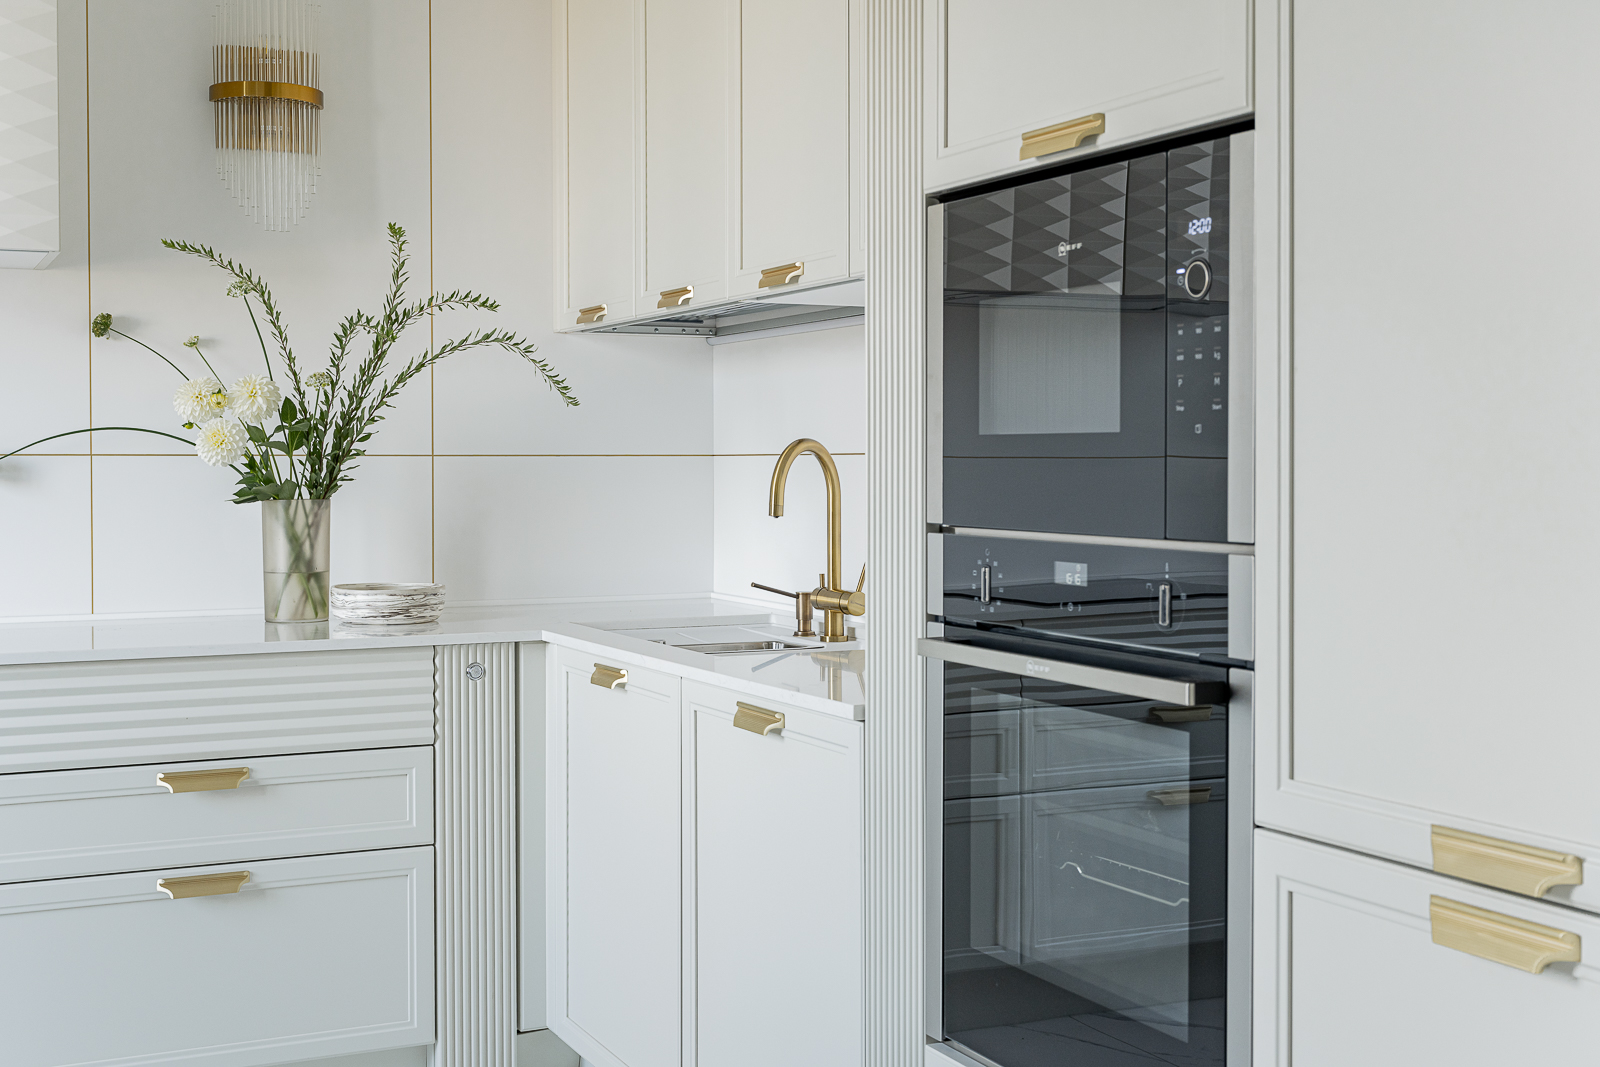 Phòng bếp tiện nghi với thiết kế kiểu chữ L, sử dụng tone màu trắng sạch sẽ, nhấn nhá các chi tiết phần cứng mạ vàng đồng và thiết bị nấu nướng màu đen sang trọng.